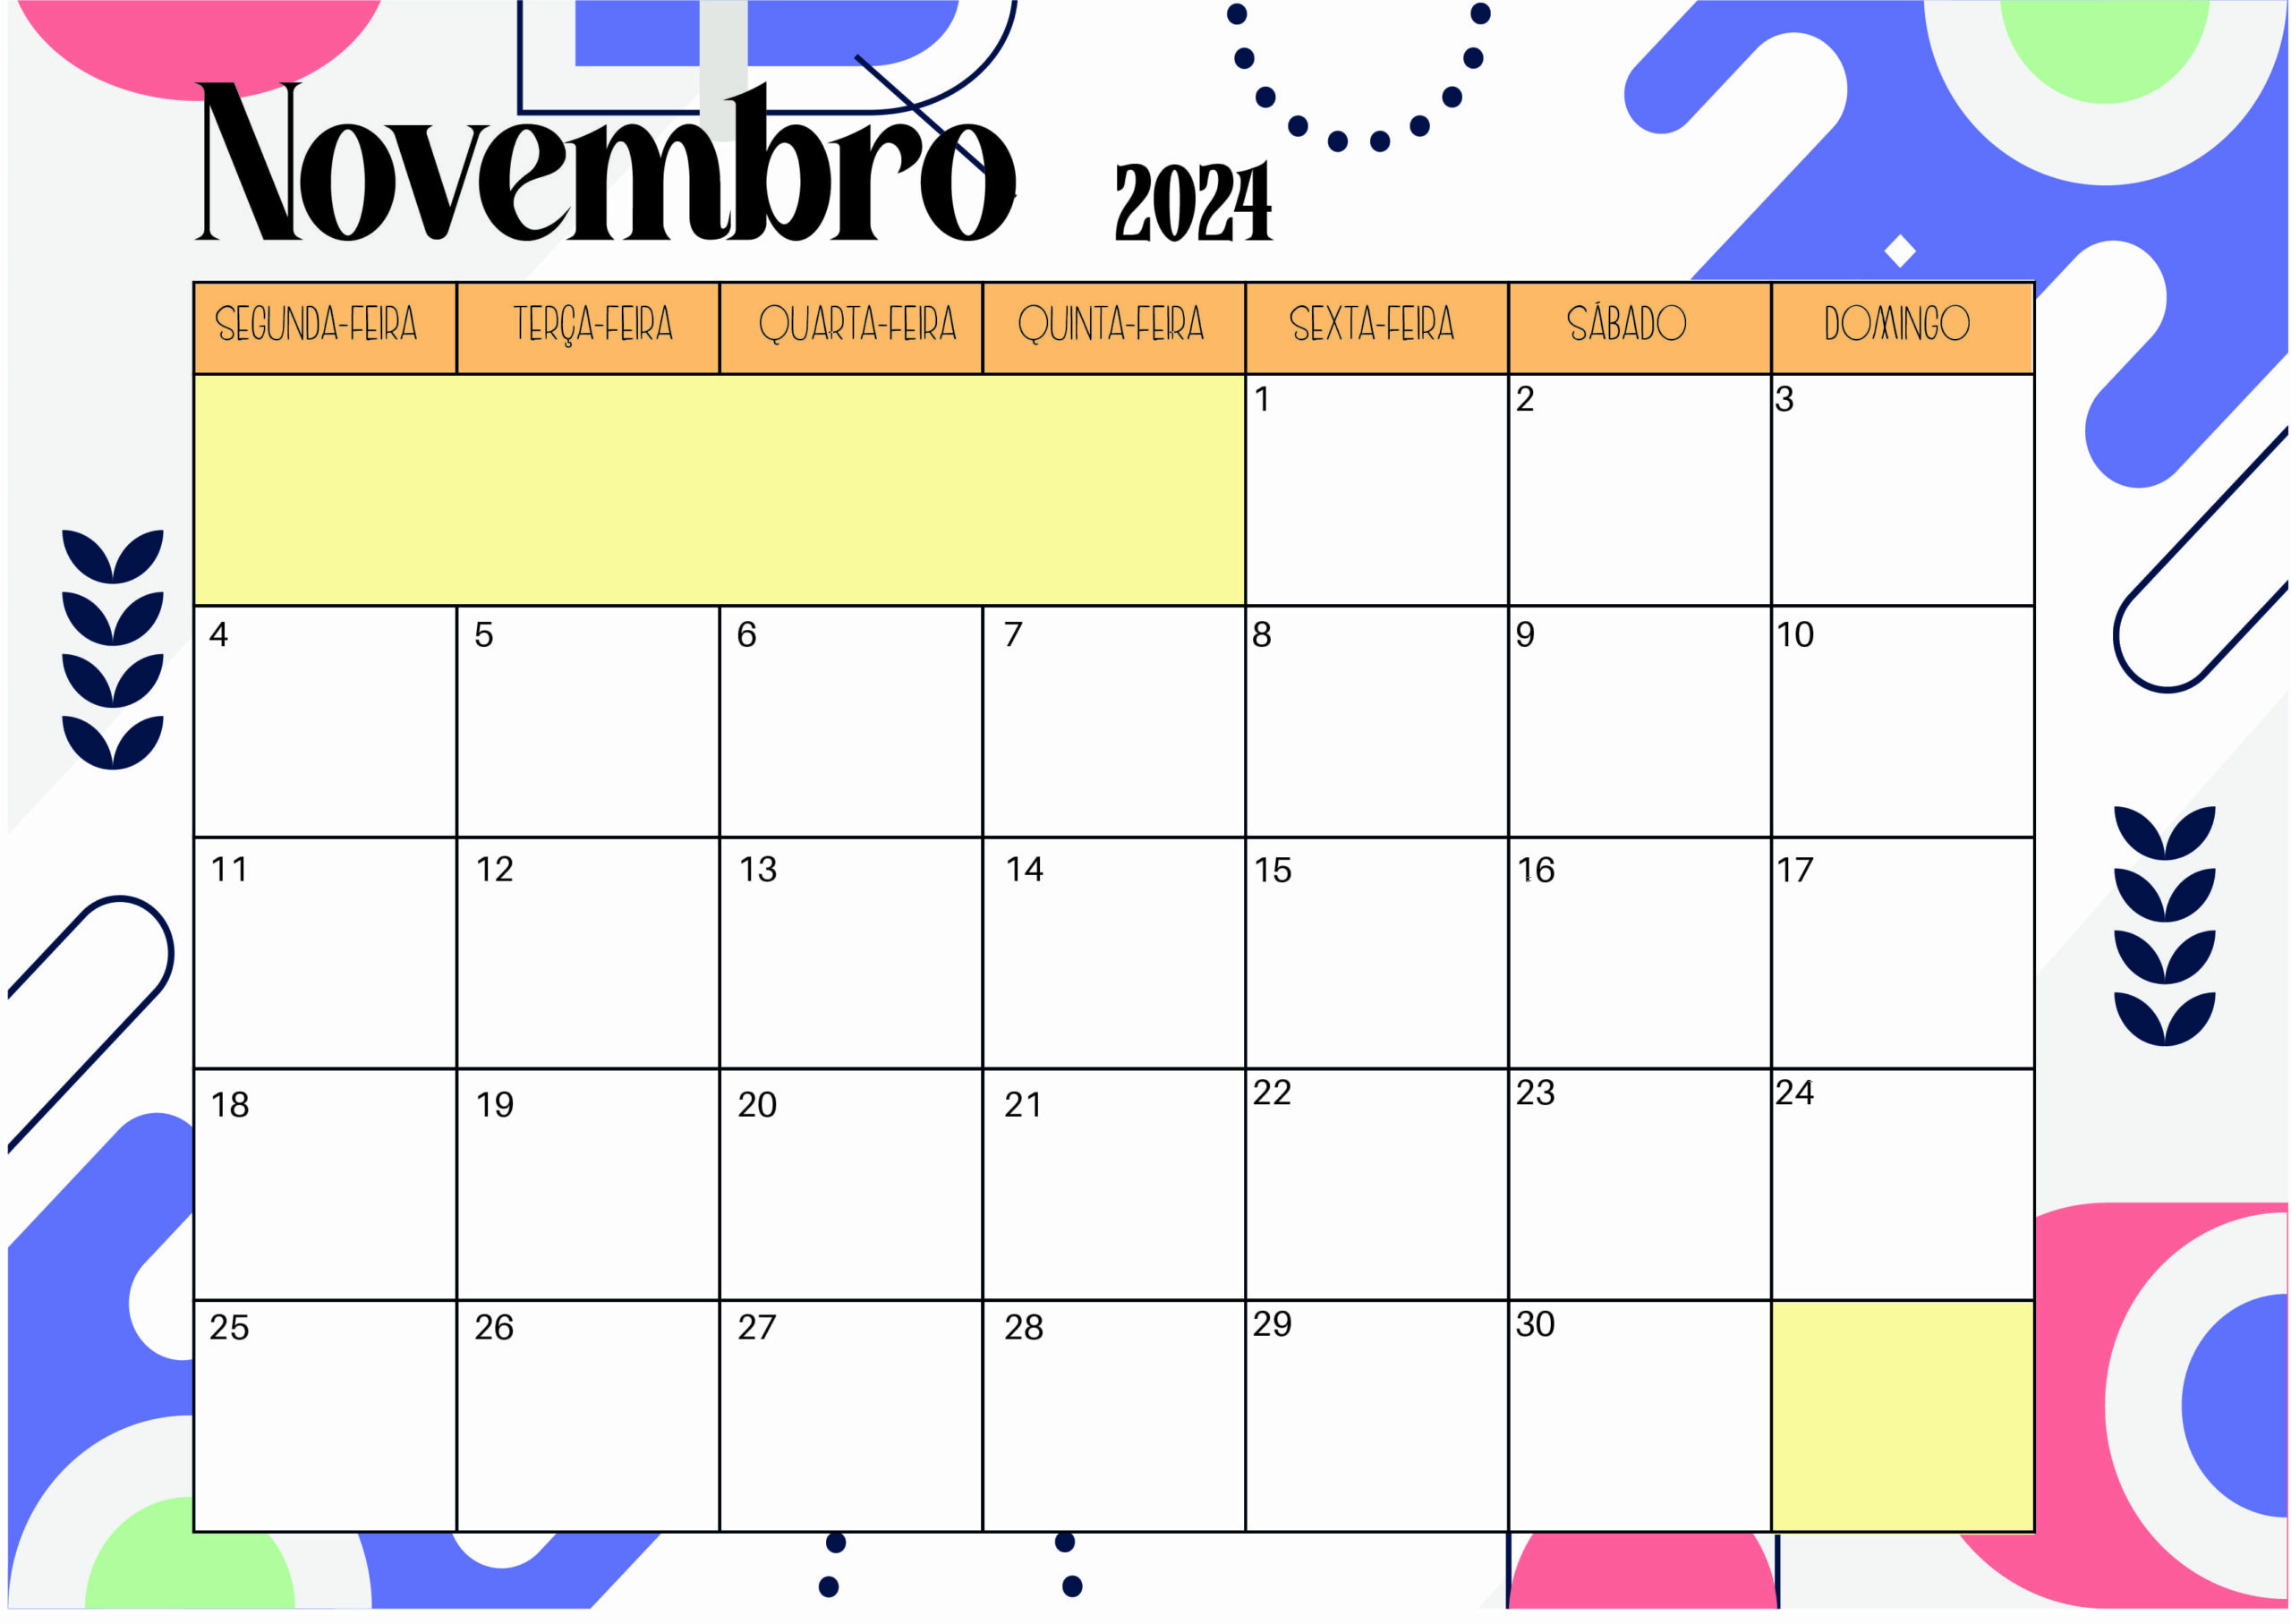 Calendário Novembro 2024 para imprimir em PDF